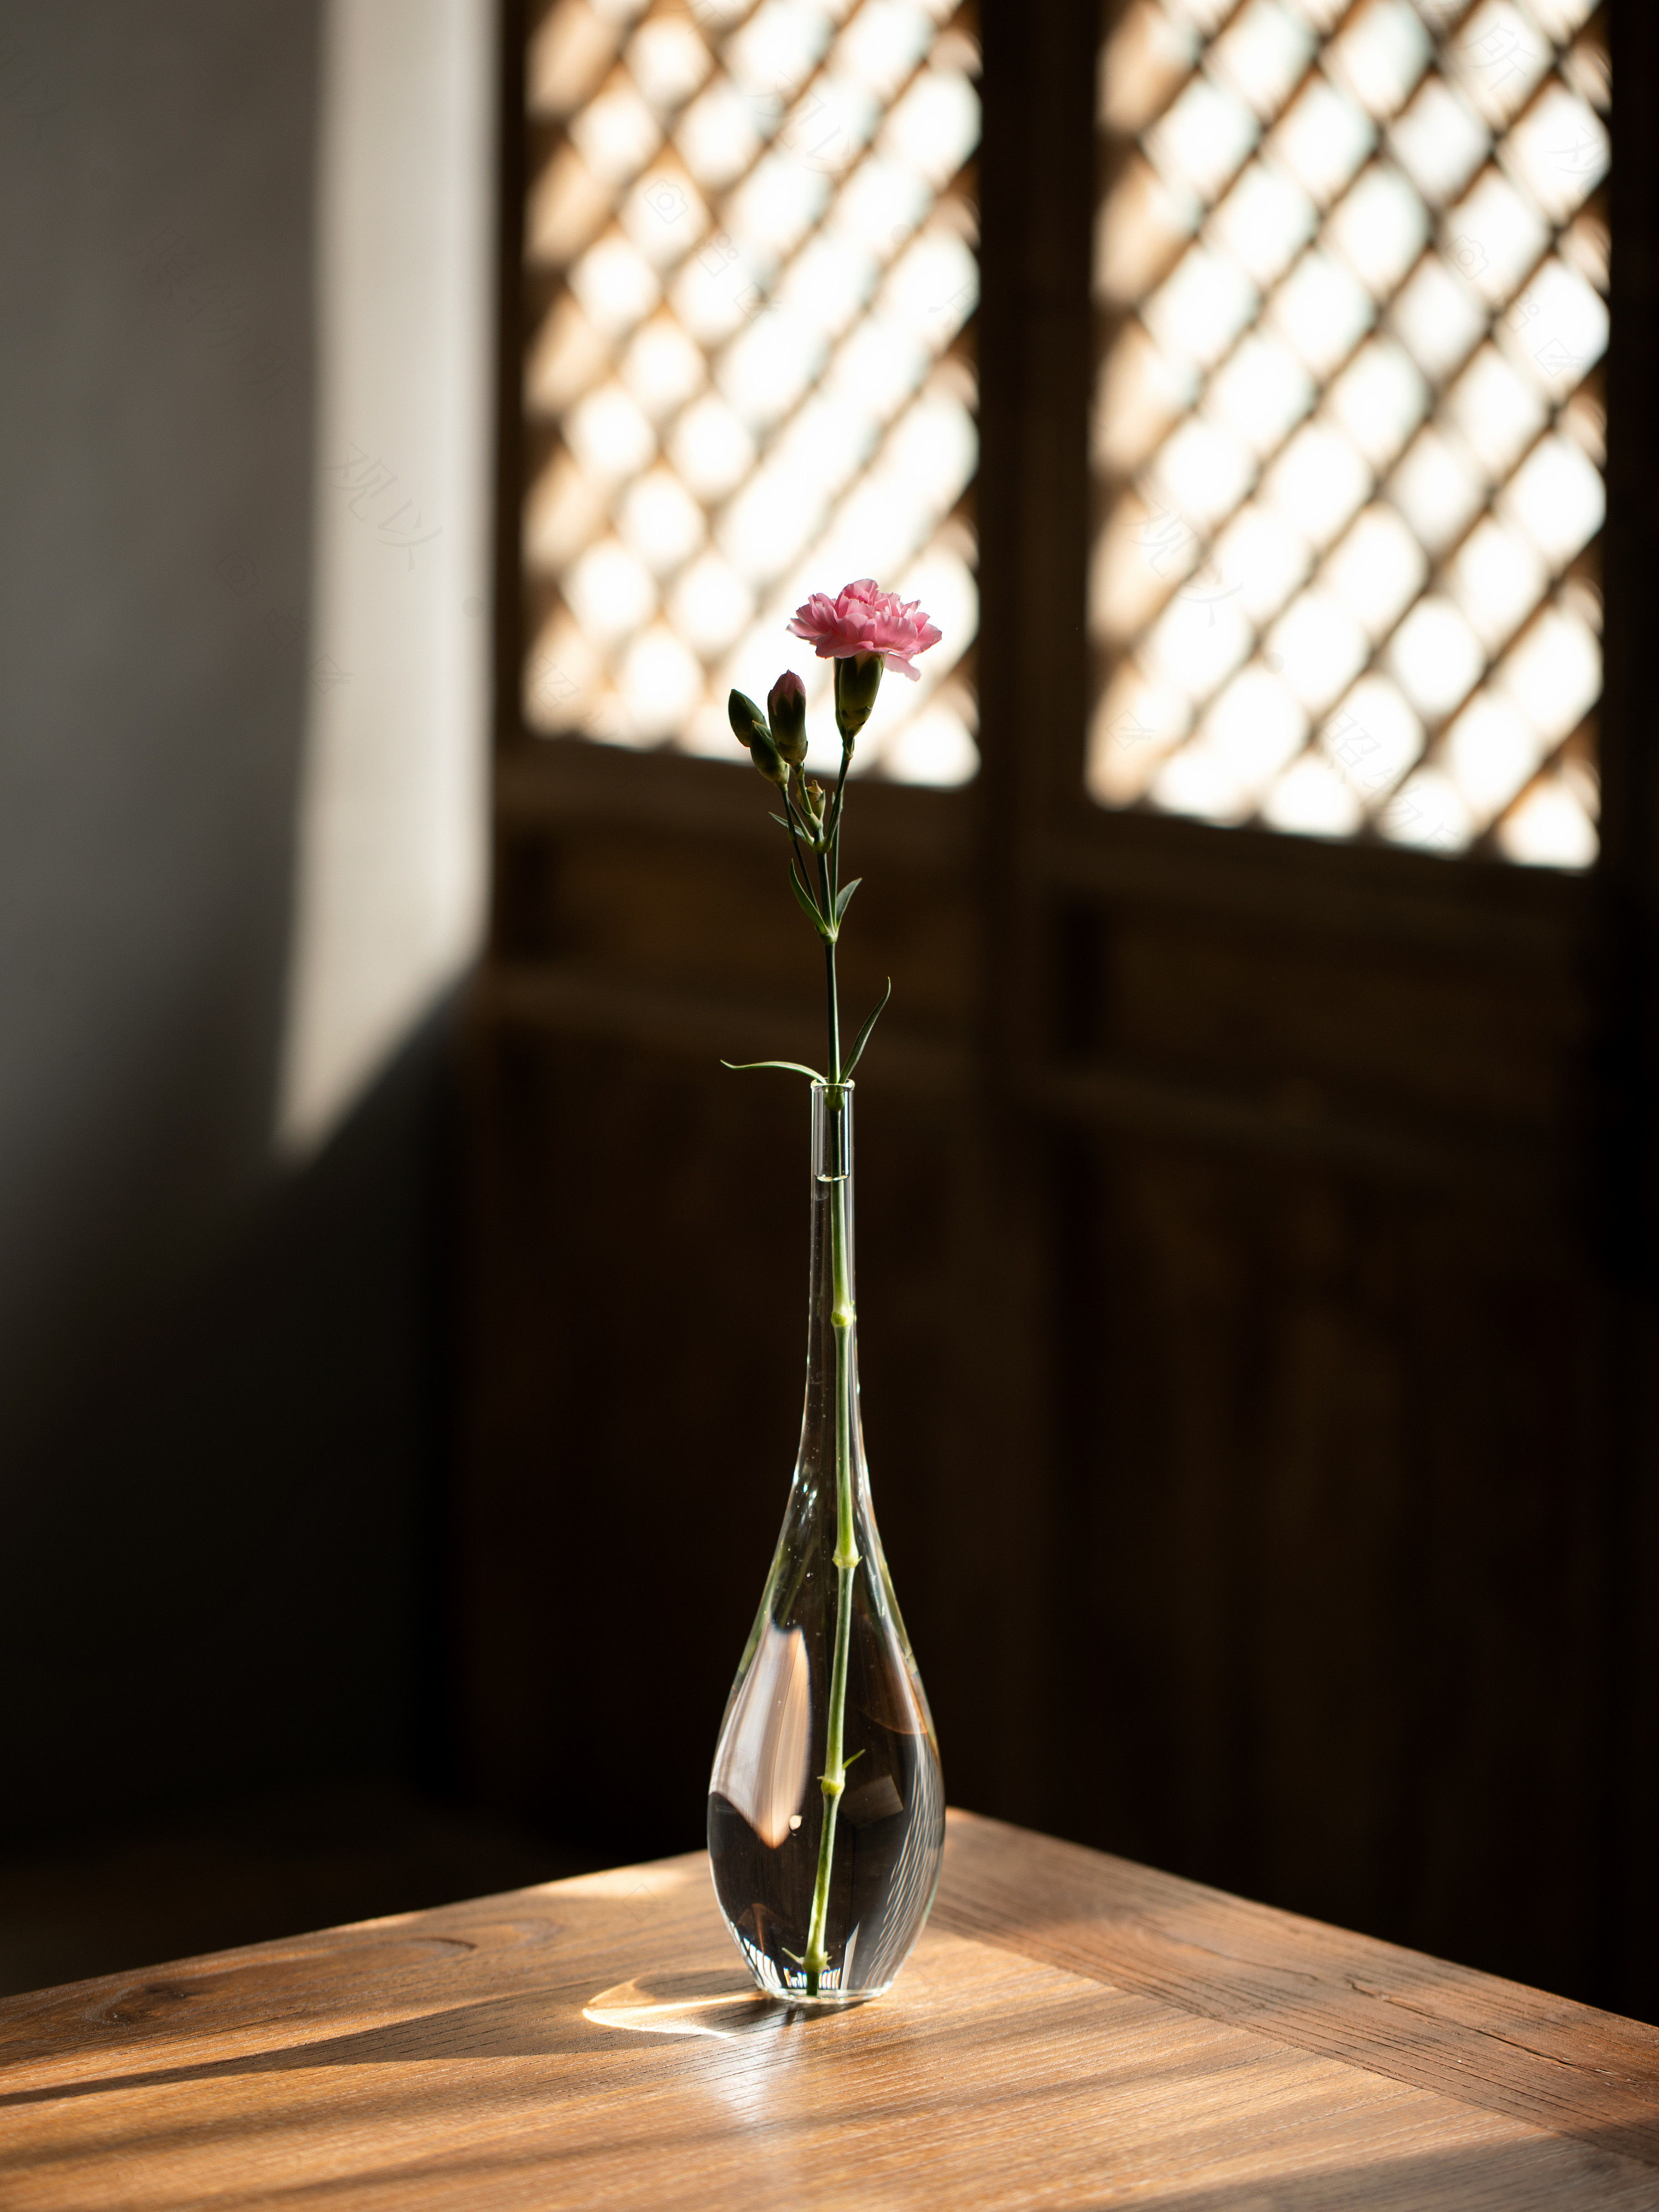 创意精美彩色玻璃花瓶台面仿真花插花器人工吹制软装家居花瓶包邮-阿里巴巴